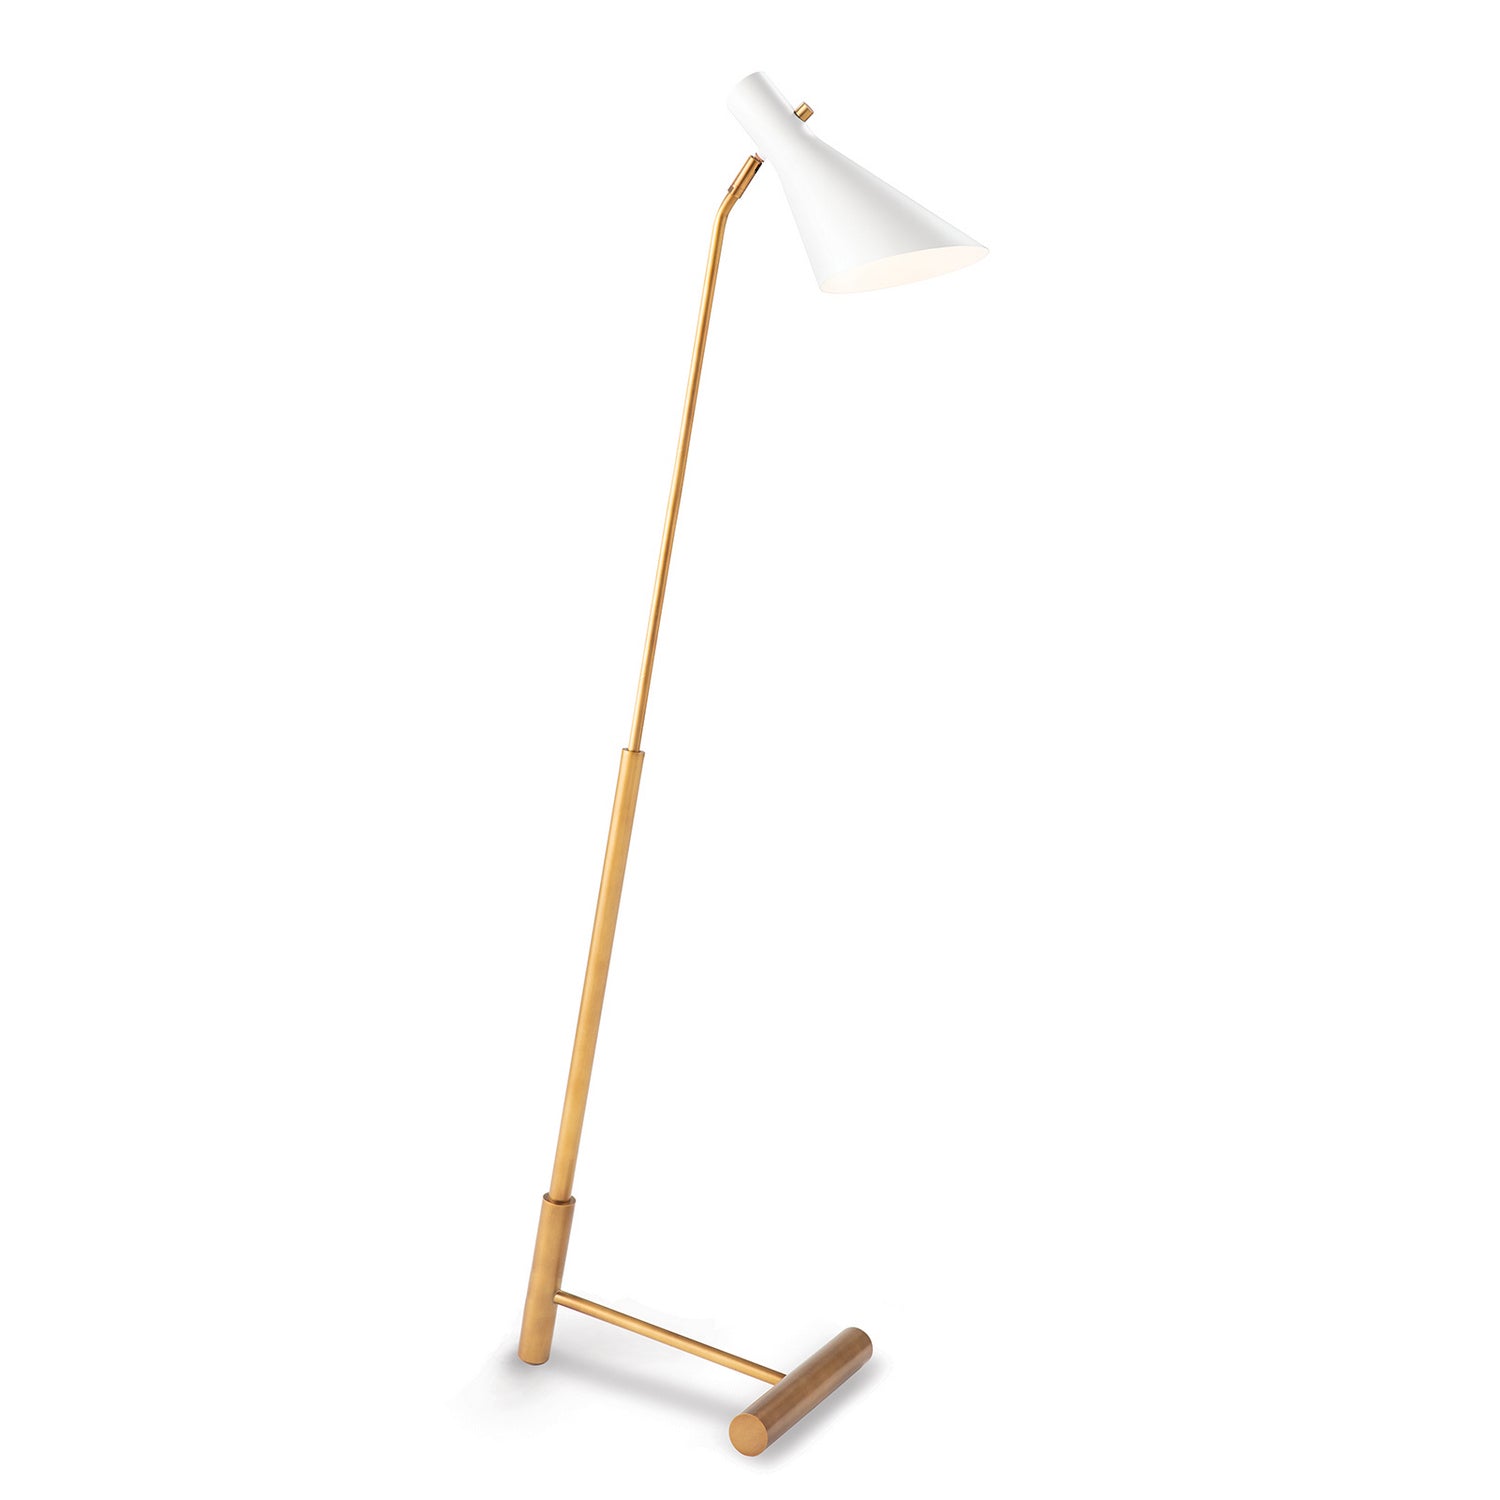 Regina Andrew - One Light Floor Lamp - Spyder - White- Union Lighting Luminaires Decor